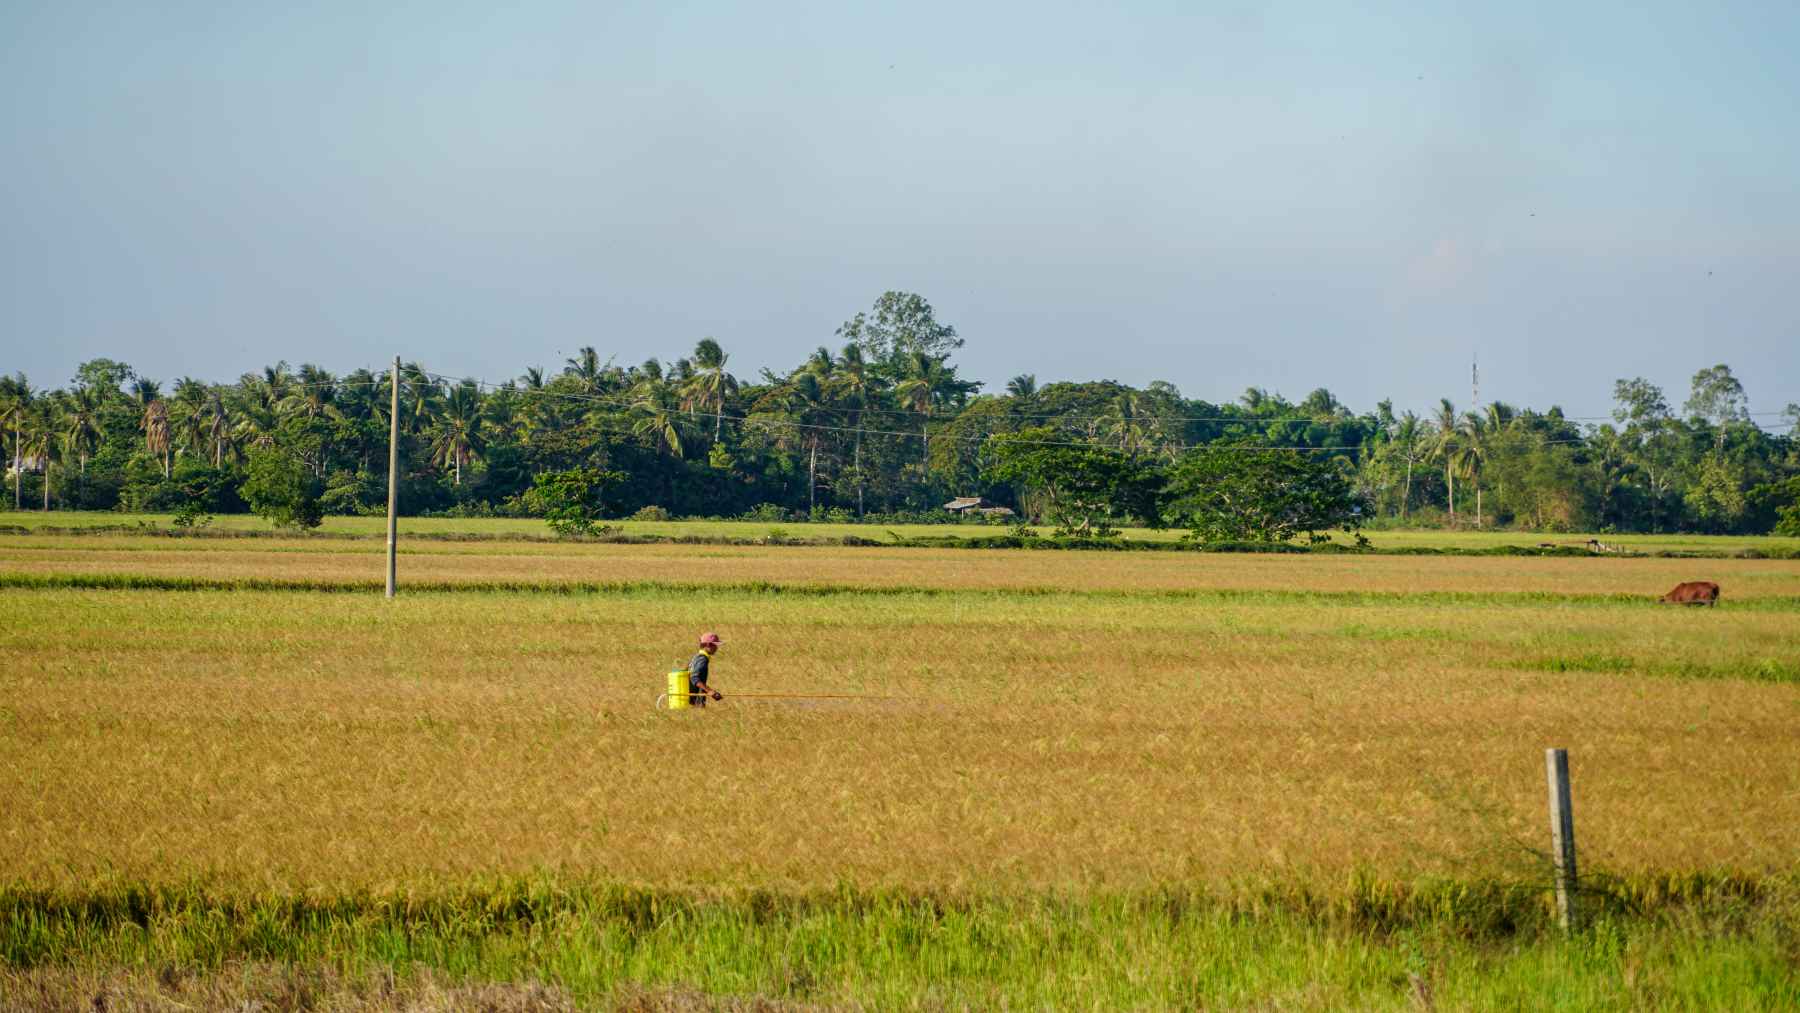 Theo Sở NN&PTNT tỉnh Sóc Trăng, toàn tỉnh hiện có hơn 1.000 ha lúa bị ảnh hưởng do thiếu nước kết hợp ngộ độc phèn dẫn đến giảm năng suất, có 33 ha thiệt hại trắng.